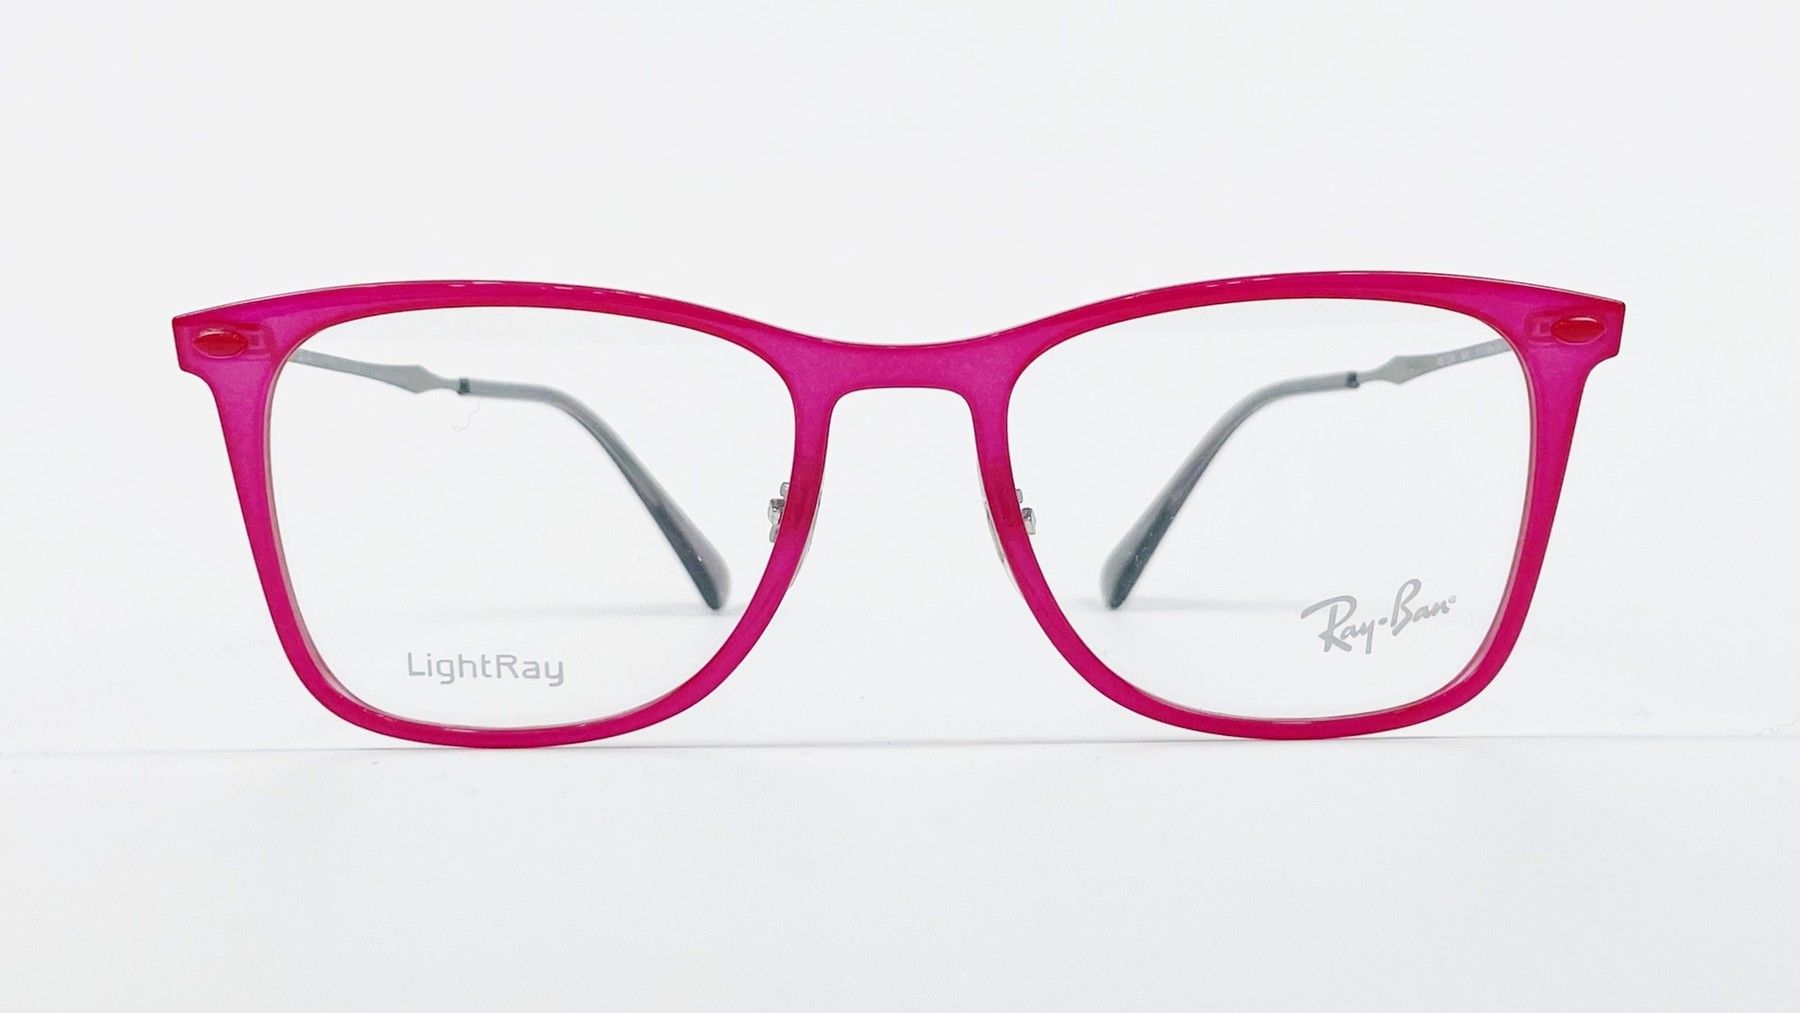 RayBan RB7086 5641, Korean glasses, sunglasses, eyeglasses, glasses